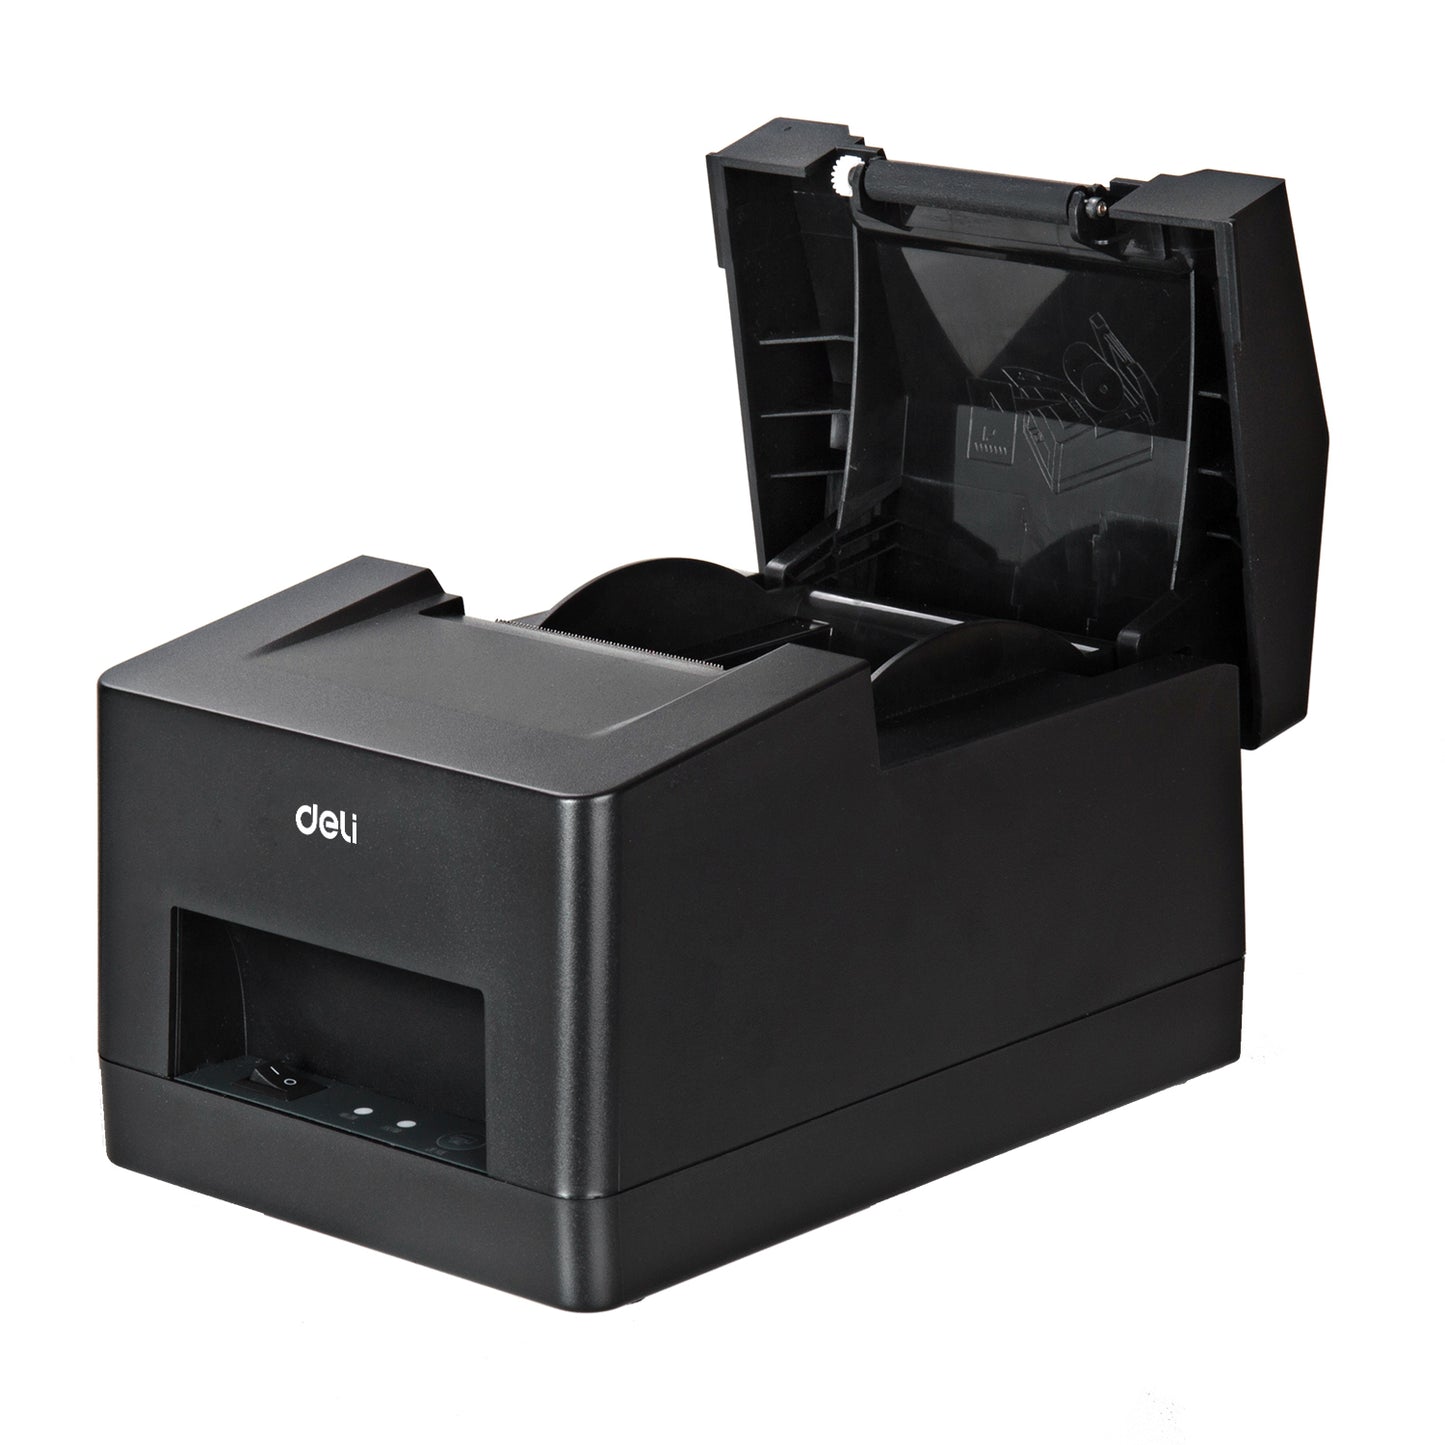 DELI E581PW Thermal Receipt Printer | Receipt printers in Dar Tanzania